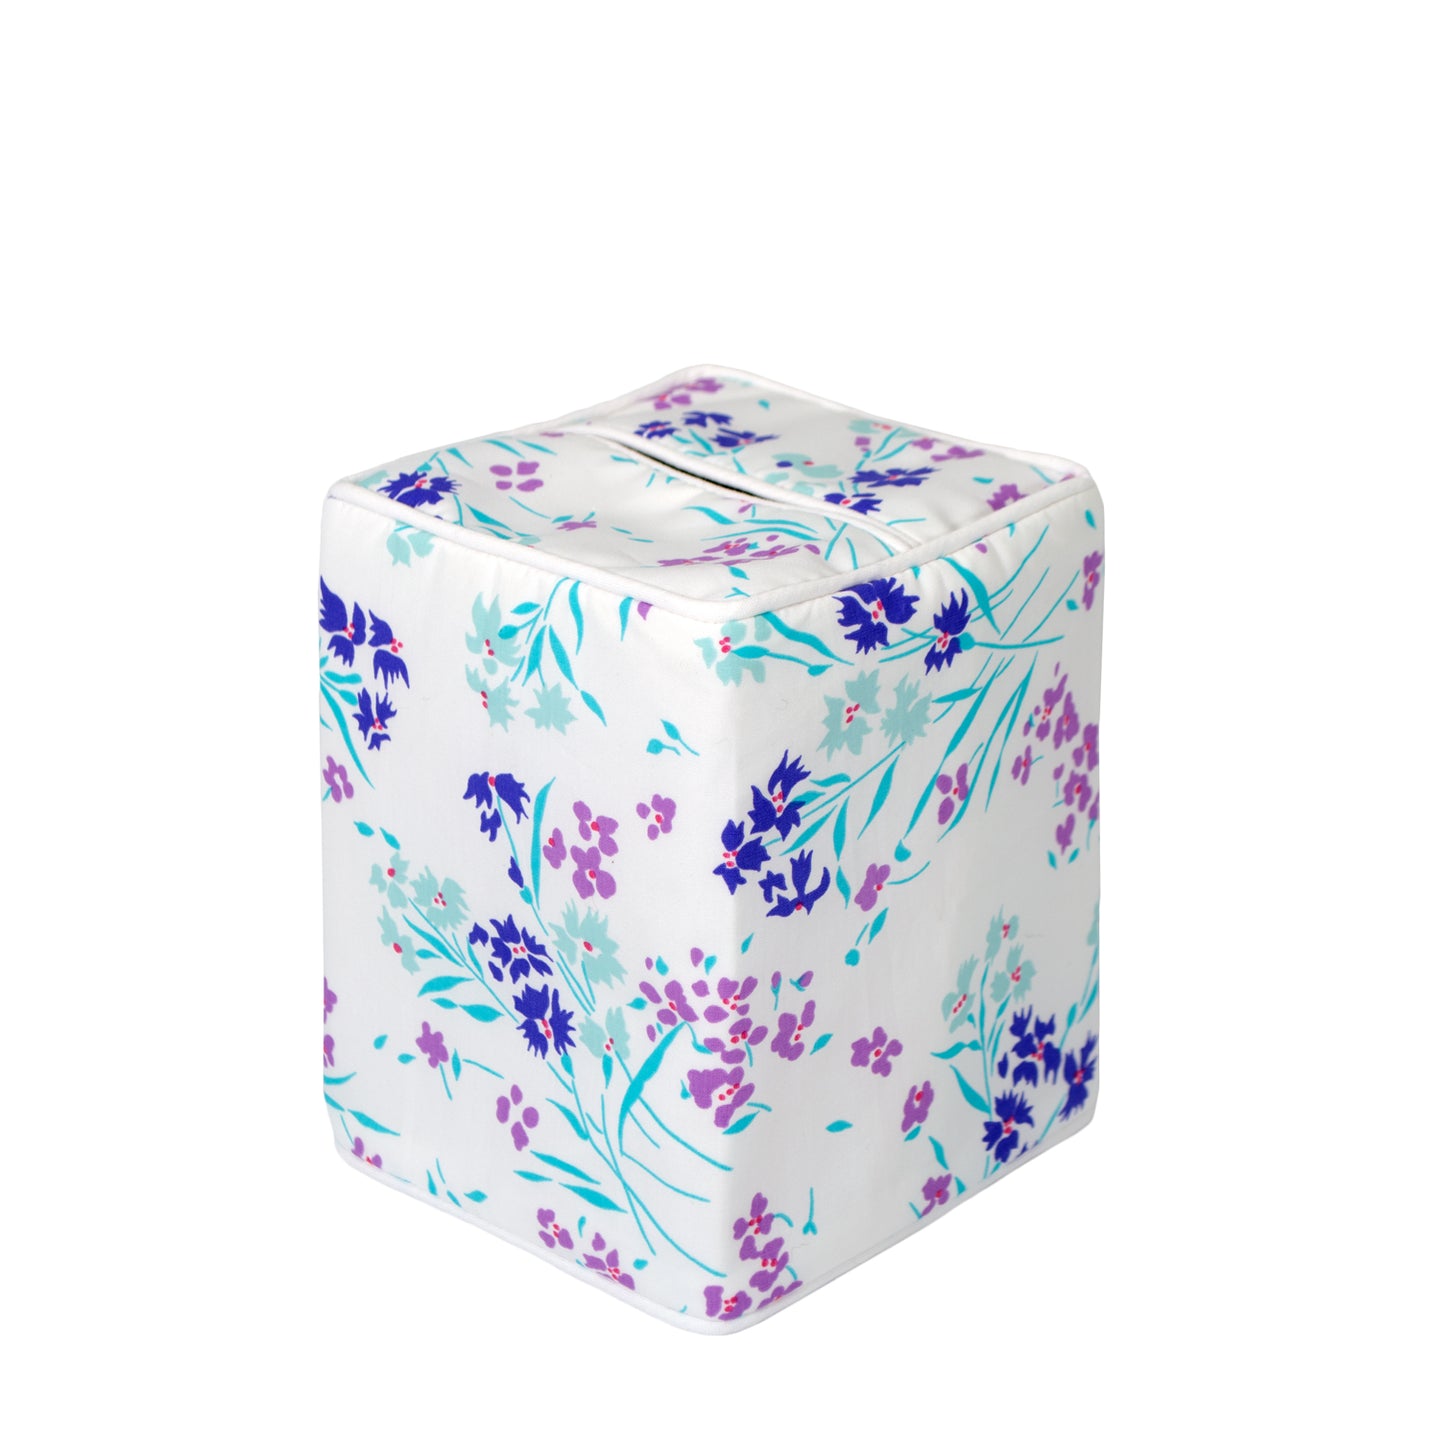 Fleurs des Champs purple Tissue Box Cover